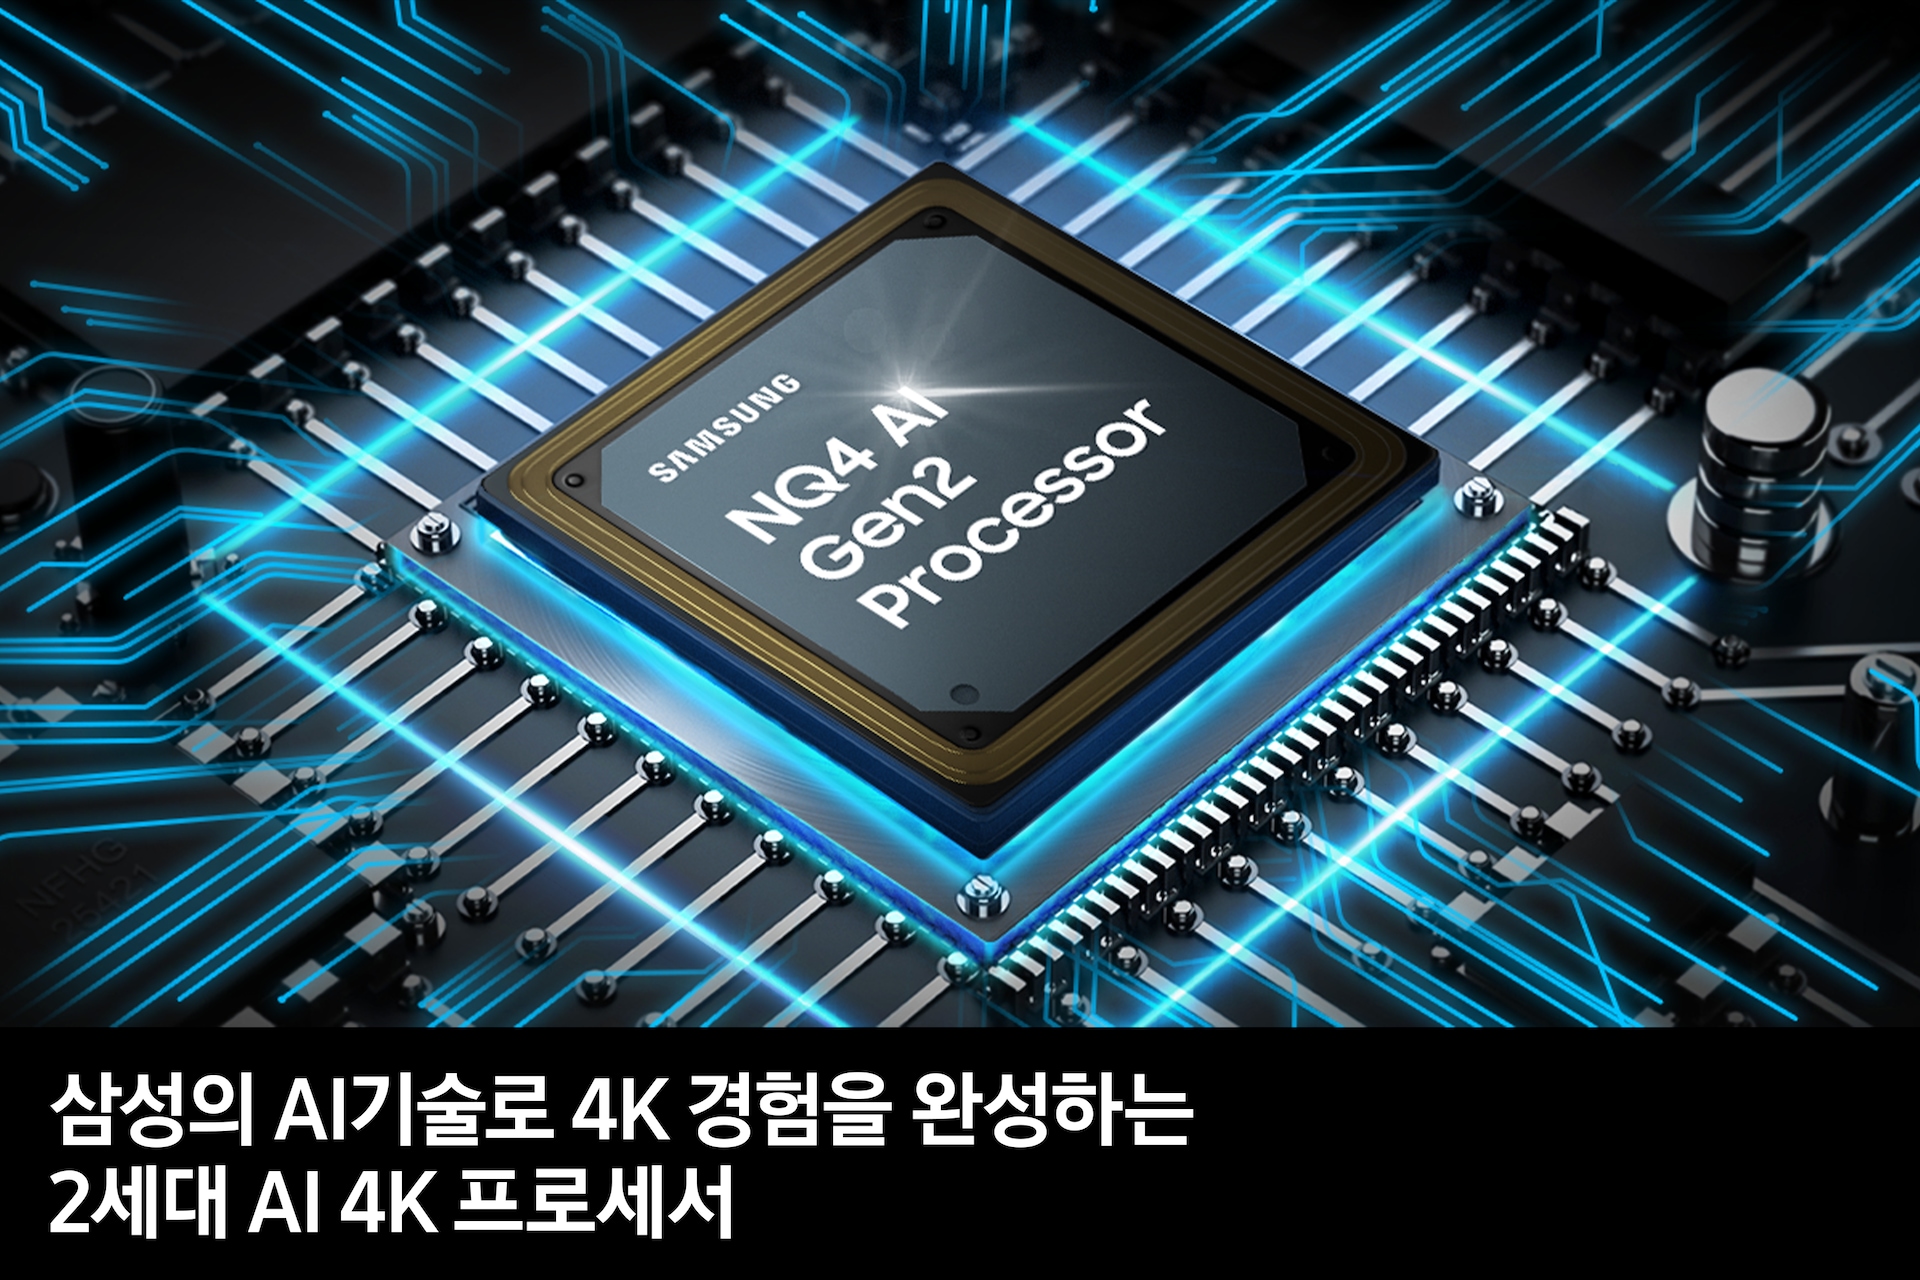 2세대 AI 4K 프로세서 칩이 보입니다. 삼성의 AI기술로 4K 경험을 완성하는 2세대 AI 4K 프로세서 feature 컷입니다.  